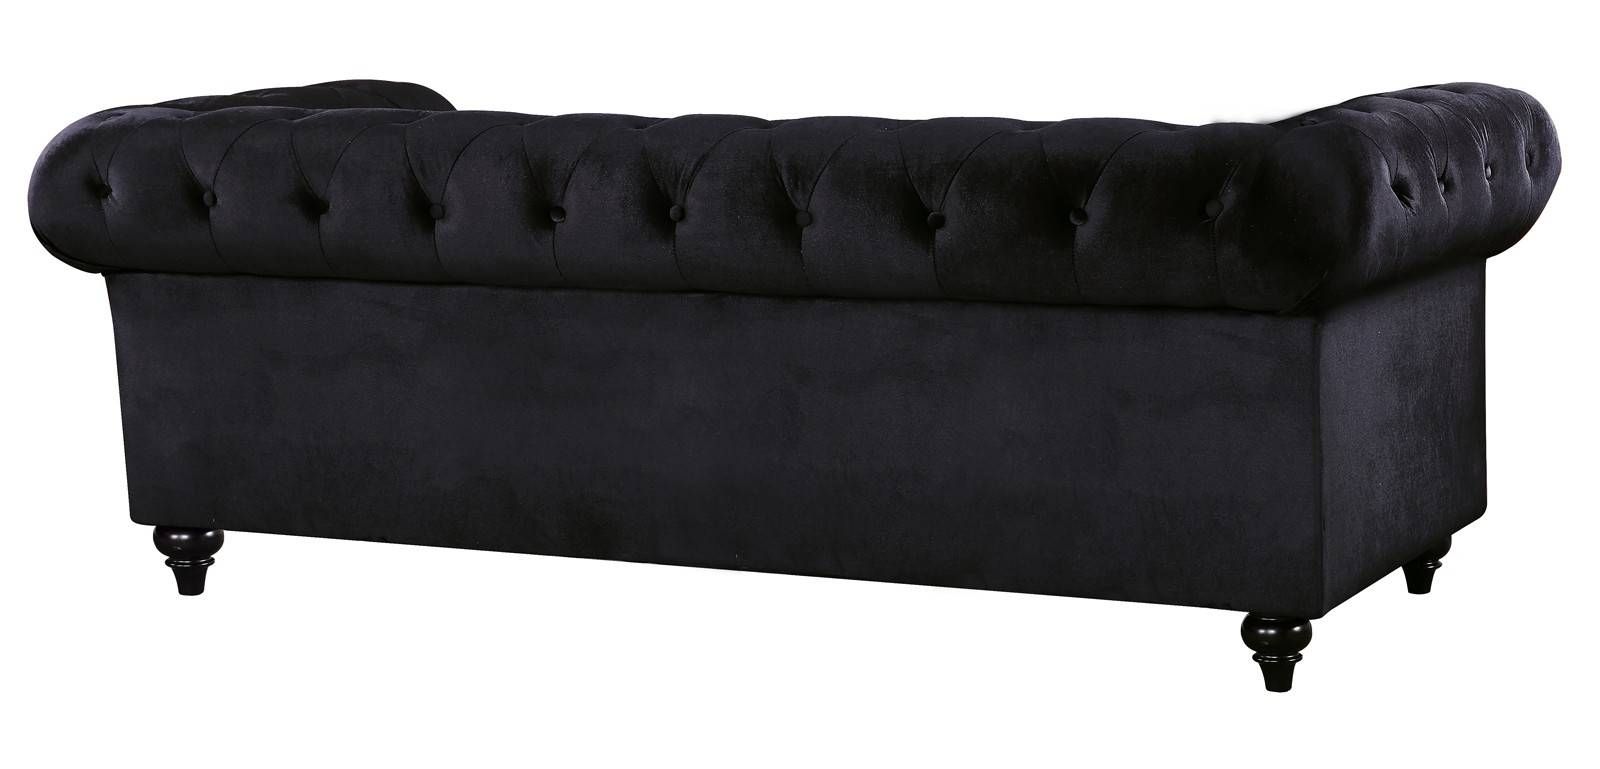 Meridian Chesterfield Velvet Sofa In Black 662bl S Intended For Chesterfield Black Sofas (View 13 of 30)